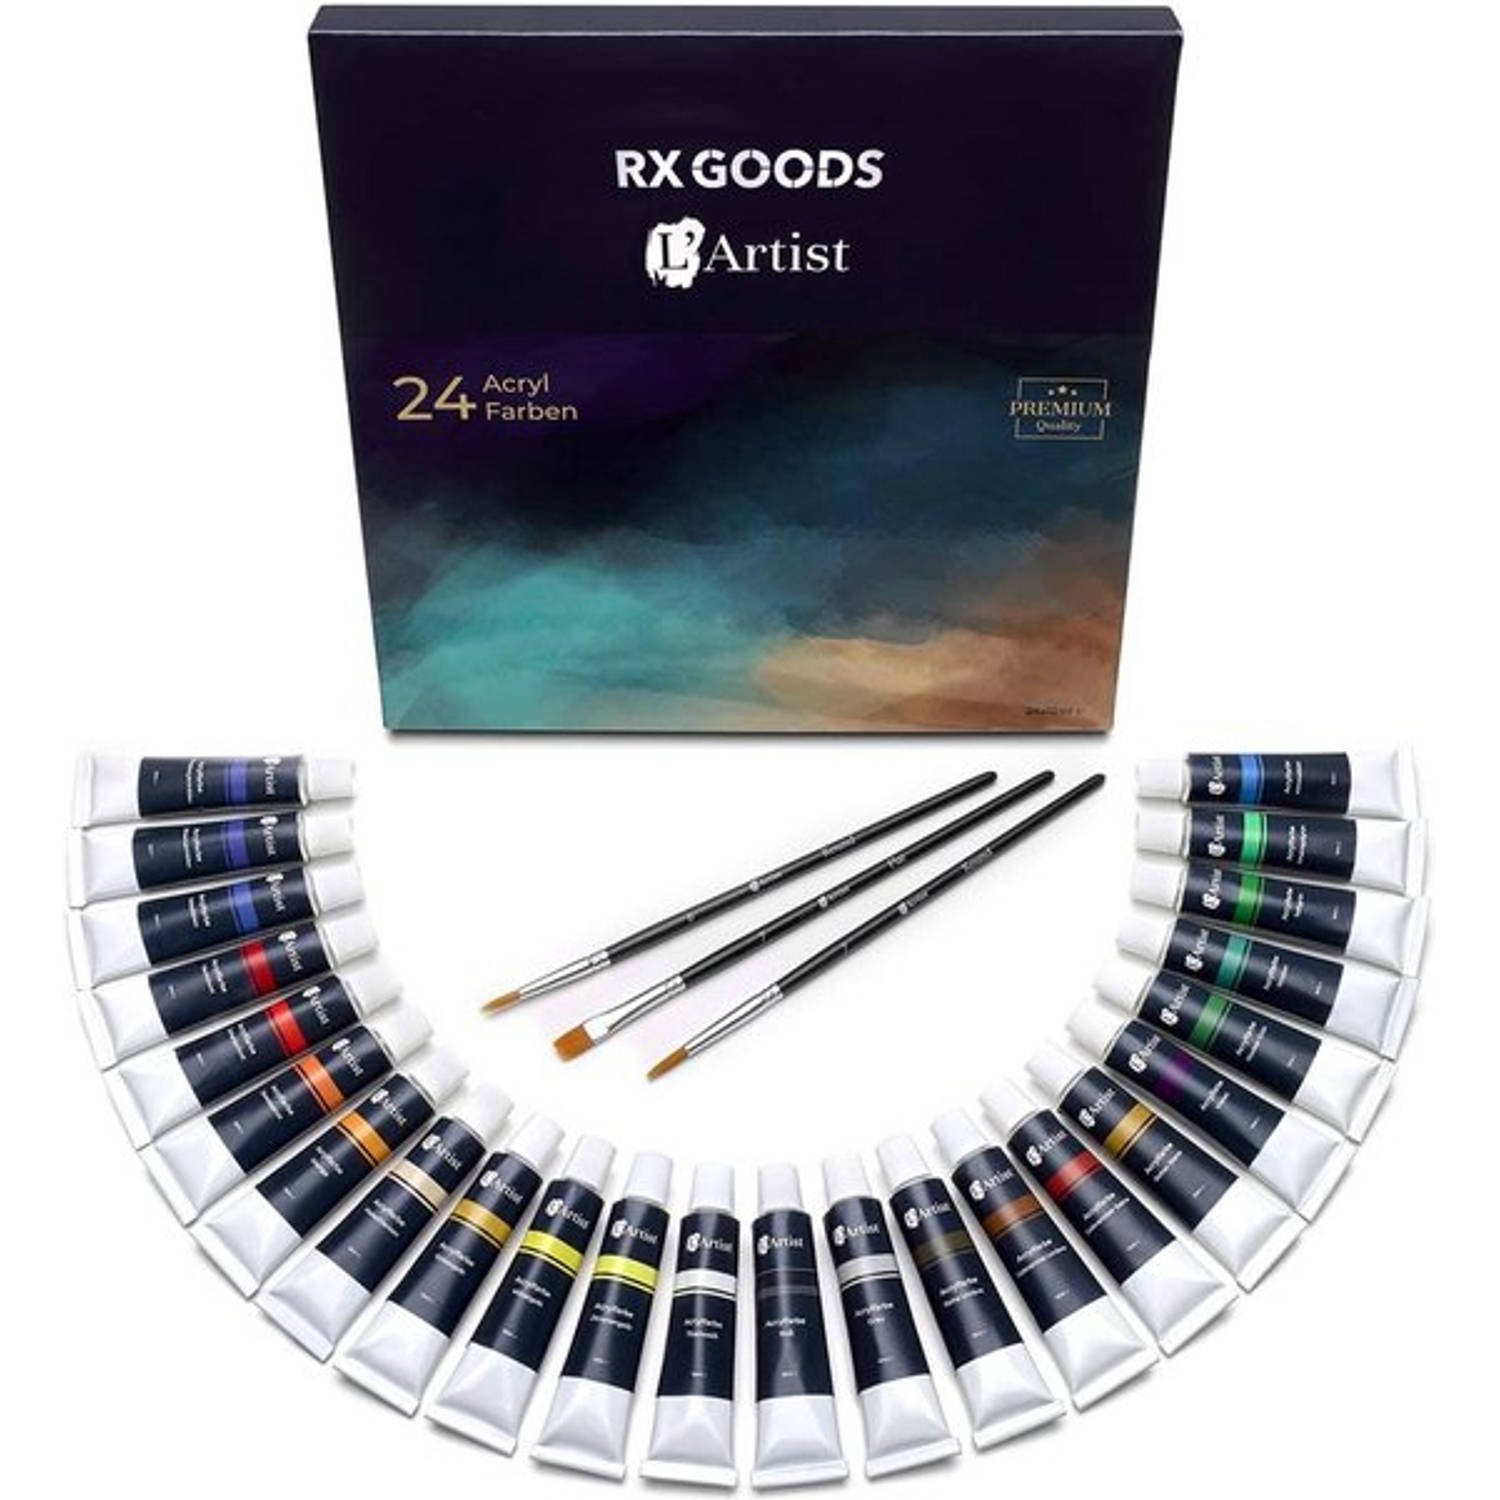 RX Goods 27 Stuks Acrylverf Set met 24 Tubes van 12 ml & 3 Penselen - Perfect voor op Canvas, Schilderij & Papier